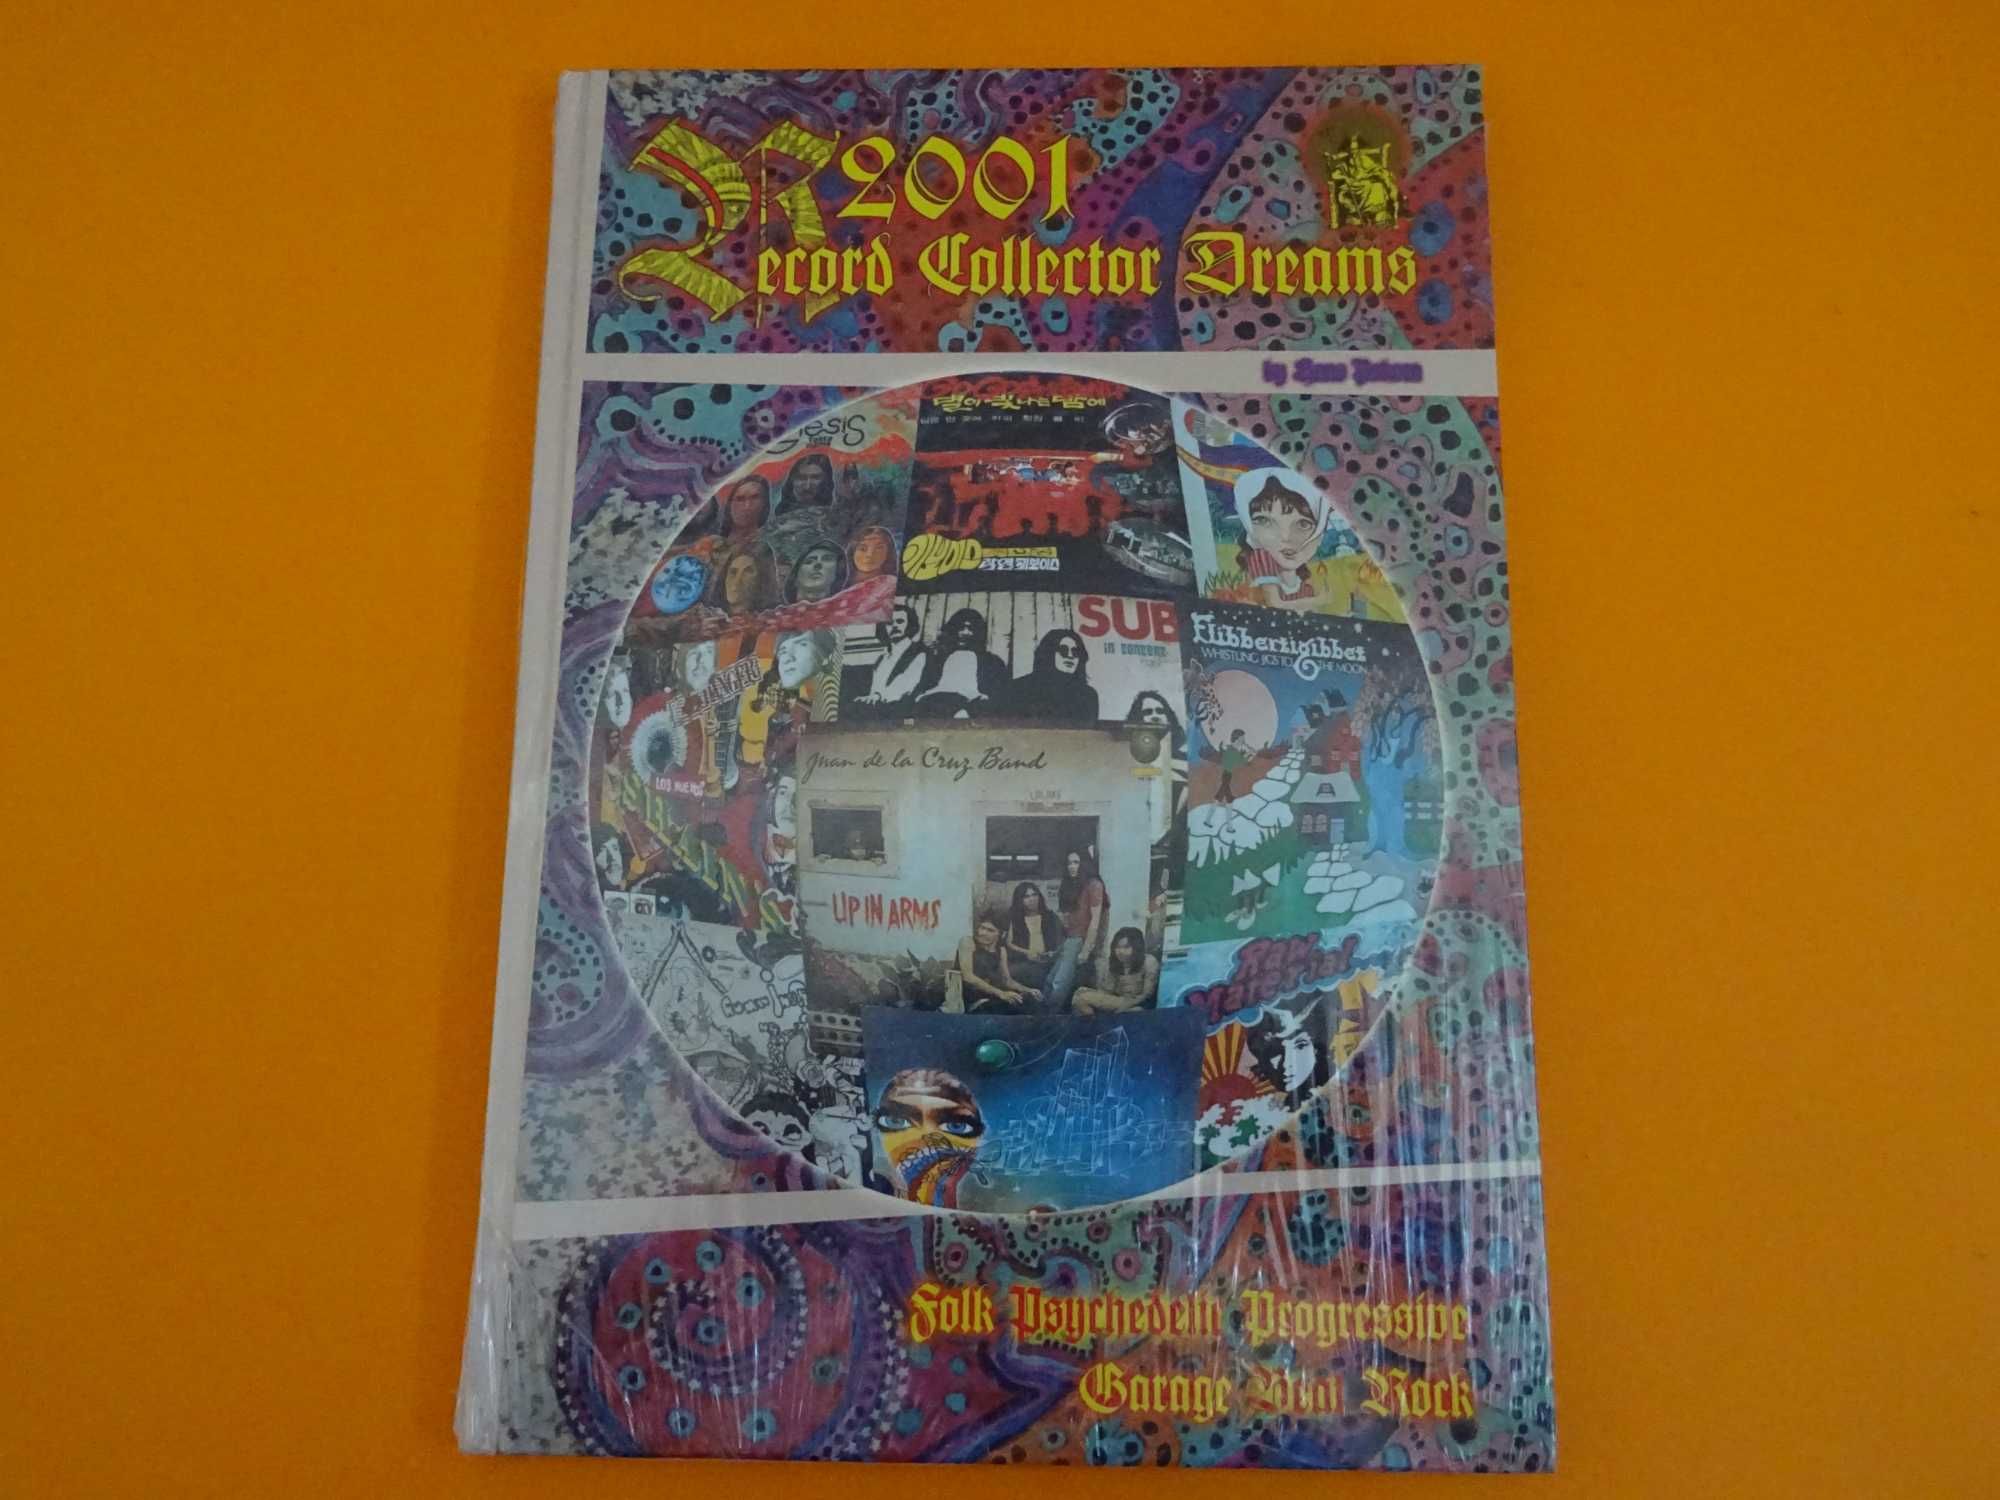 Record collector dreams 2001 Catálogo DISCOS VINIL RAROS DO MUNDO